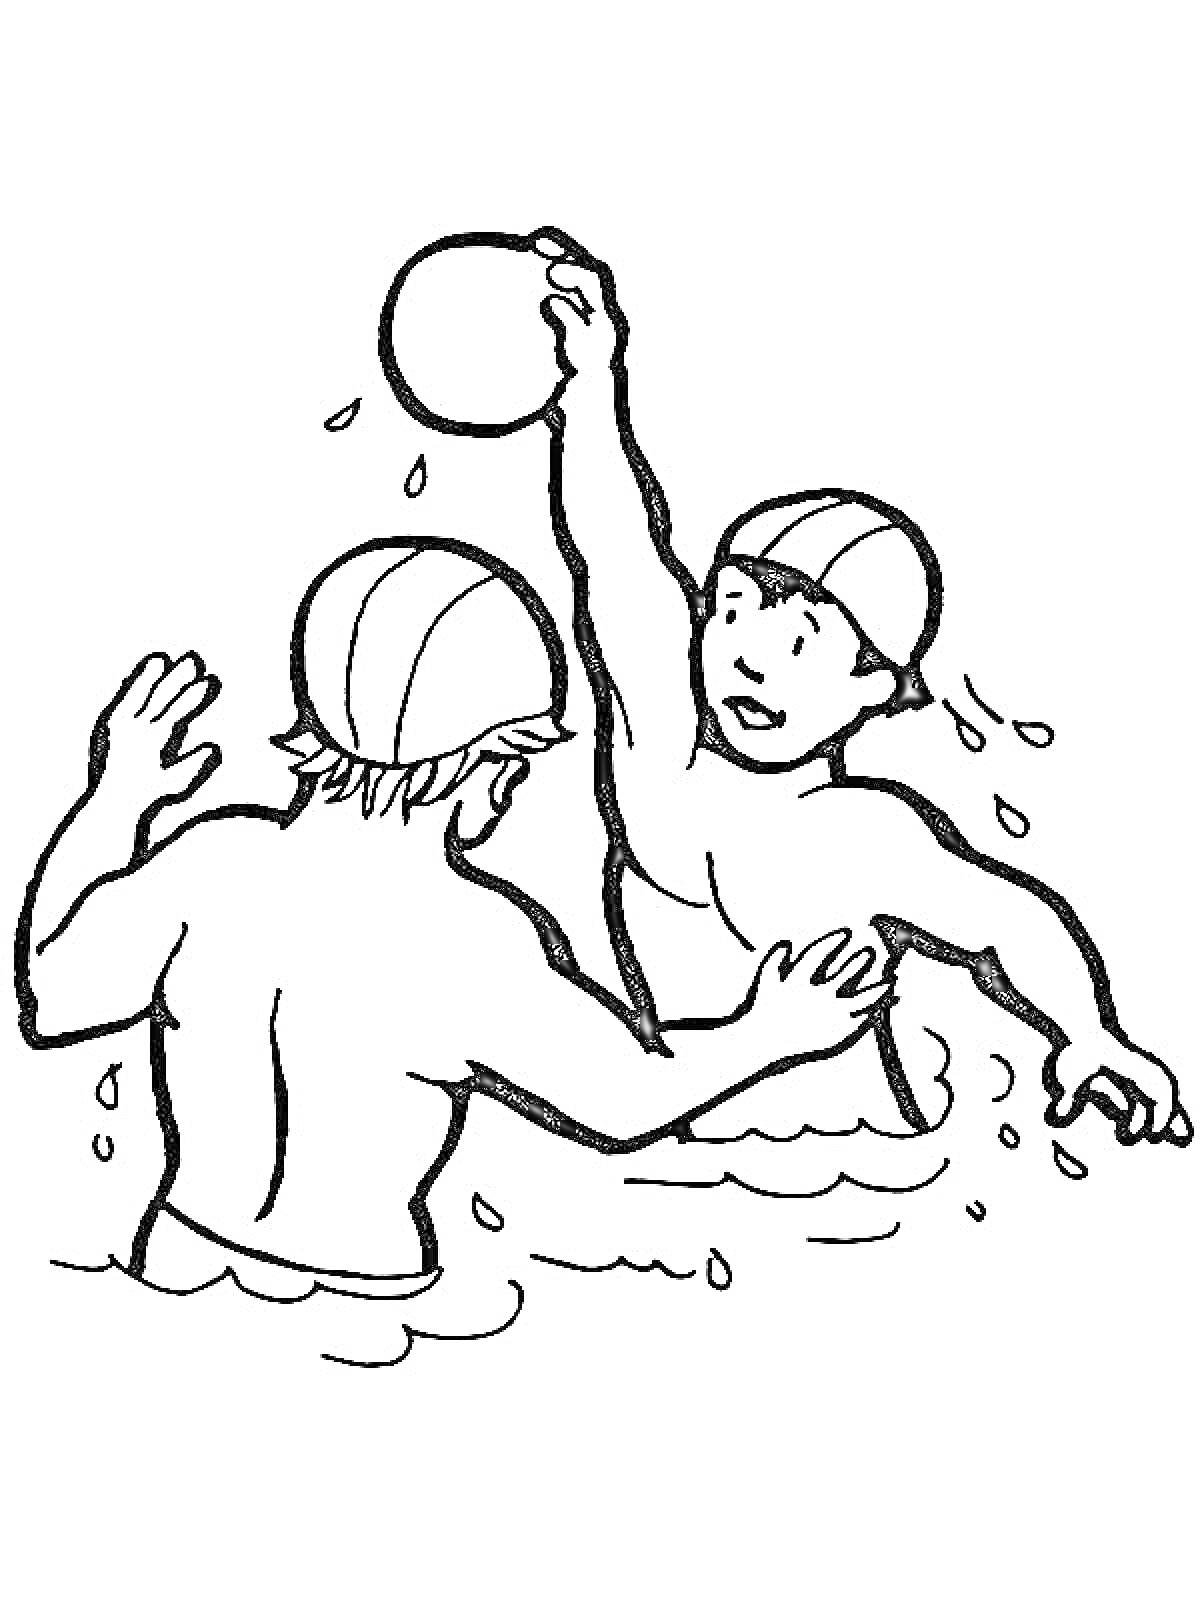 Два человека играют в водное поло, один кидает мяч, оба в воде и в шапочках